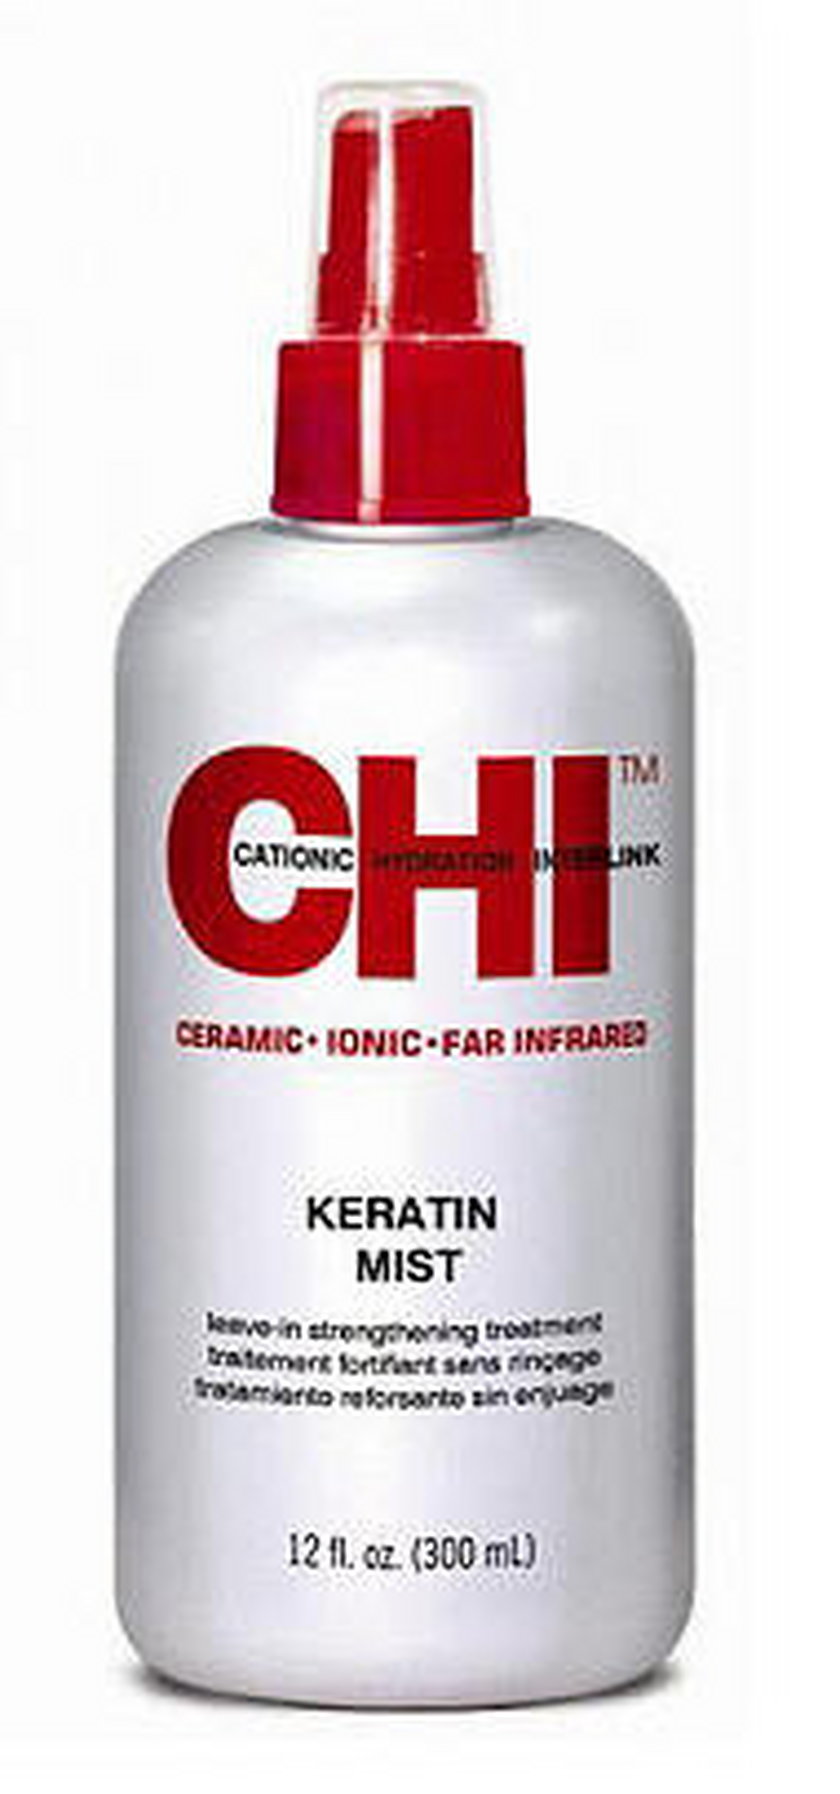 HI Keratin Mist, keratyna do włosów w mgiełce, 355ml